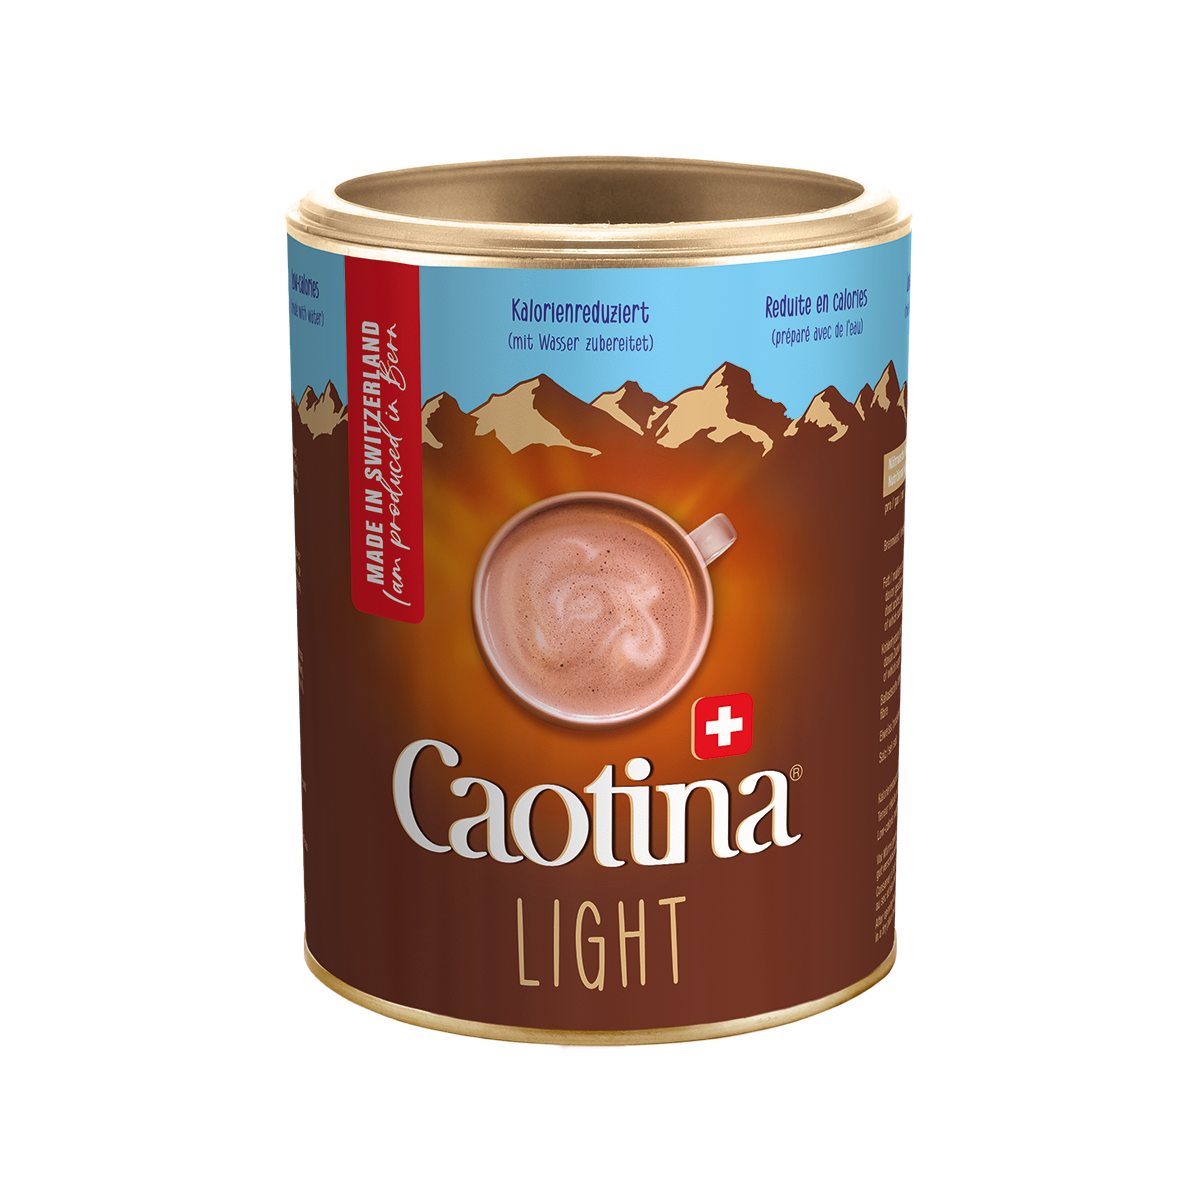  Caotina Light - le cacao à boire pour diabétiques